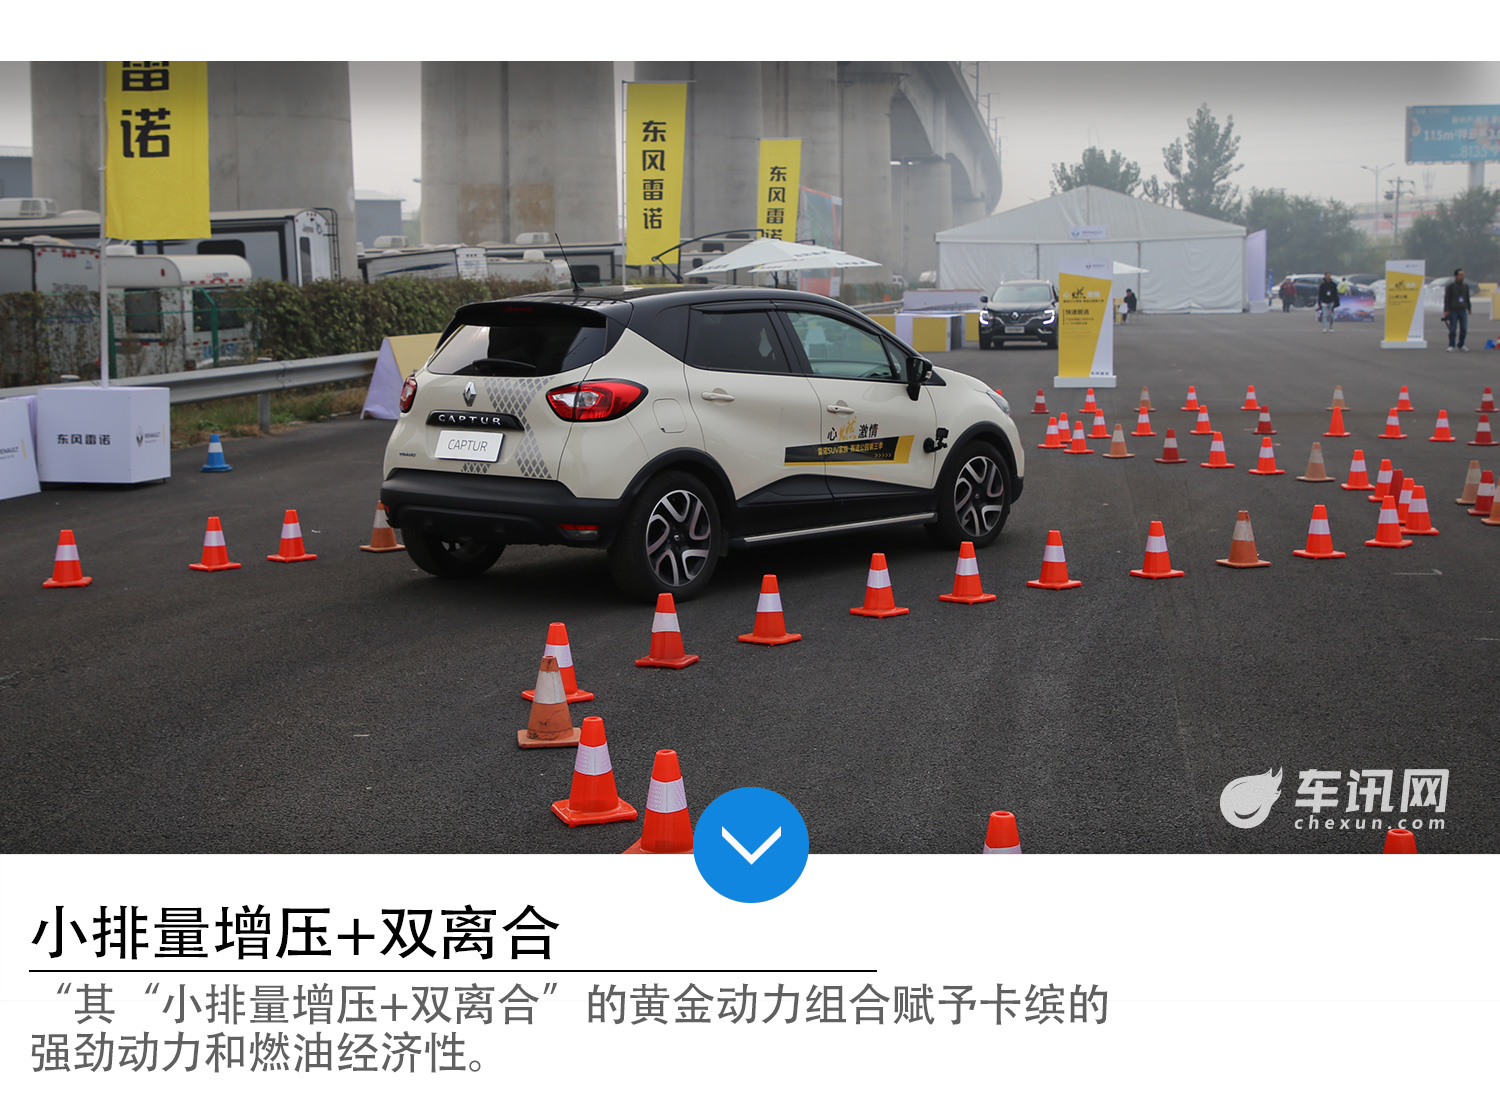 雷诺SUV家族赛道公园北京站 体验法式激情